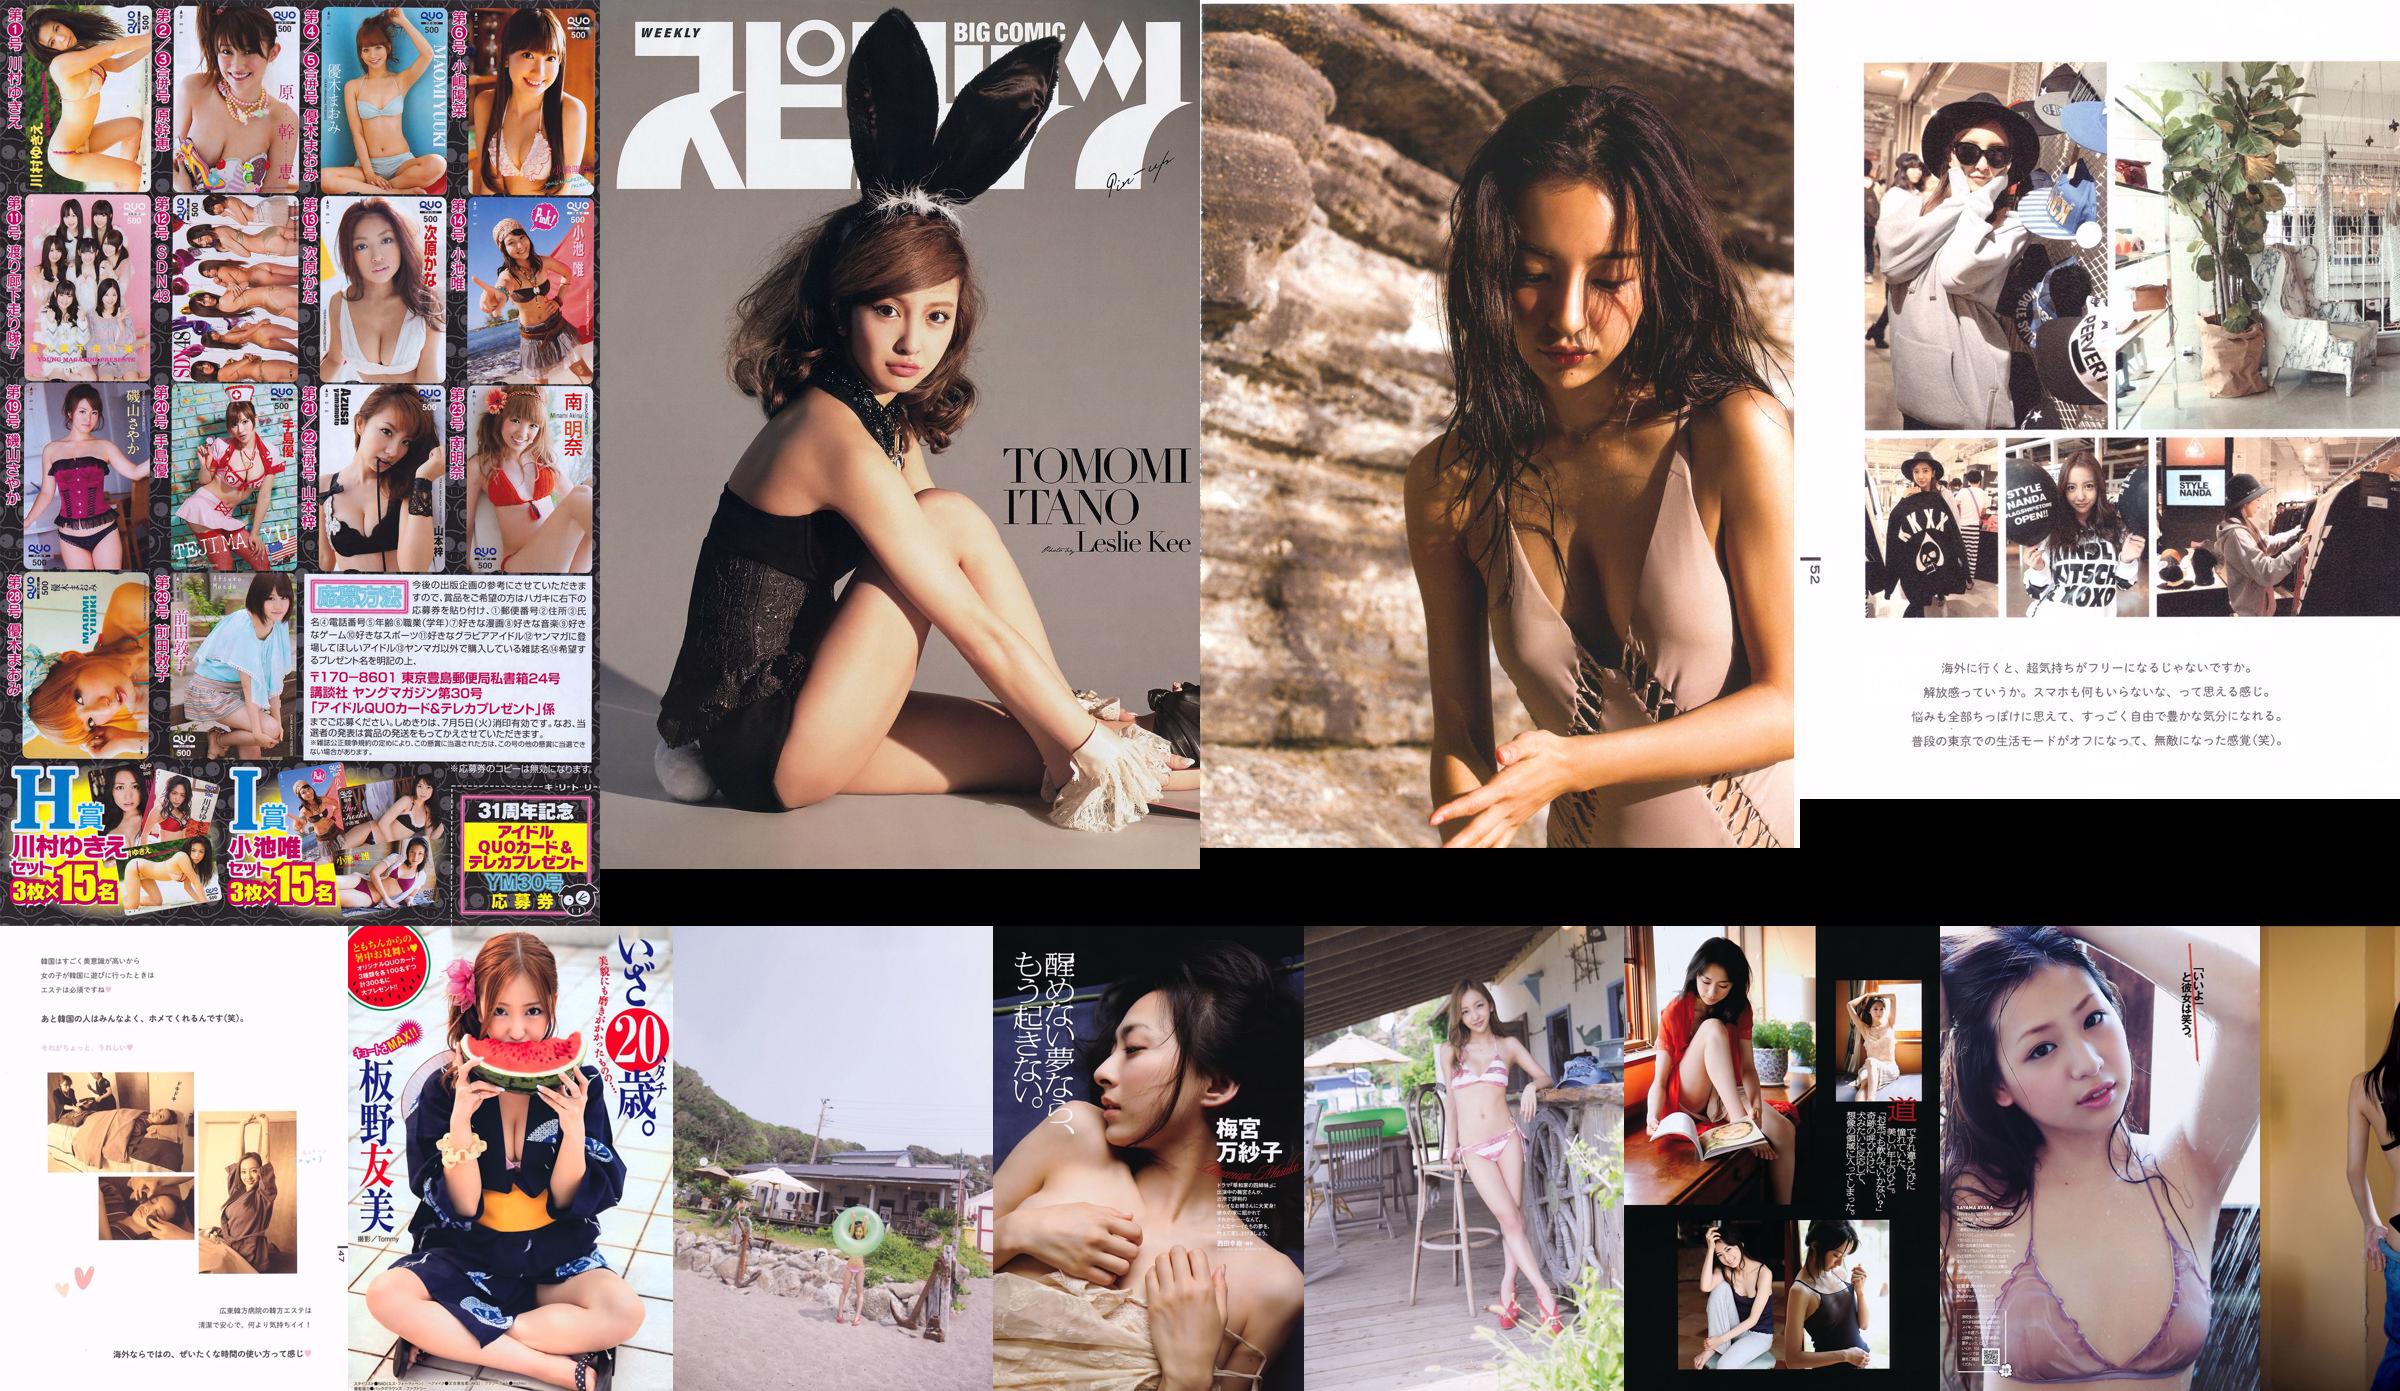 Tomomi Itano << release >> [PhotoBook] No.37bd1c Page 4